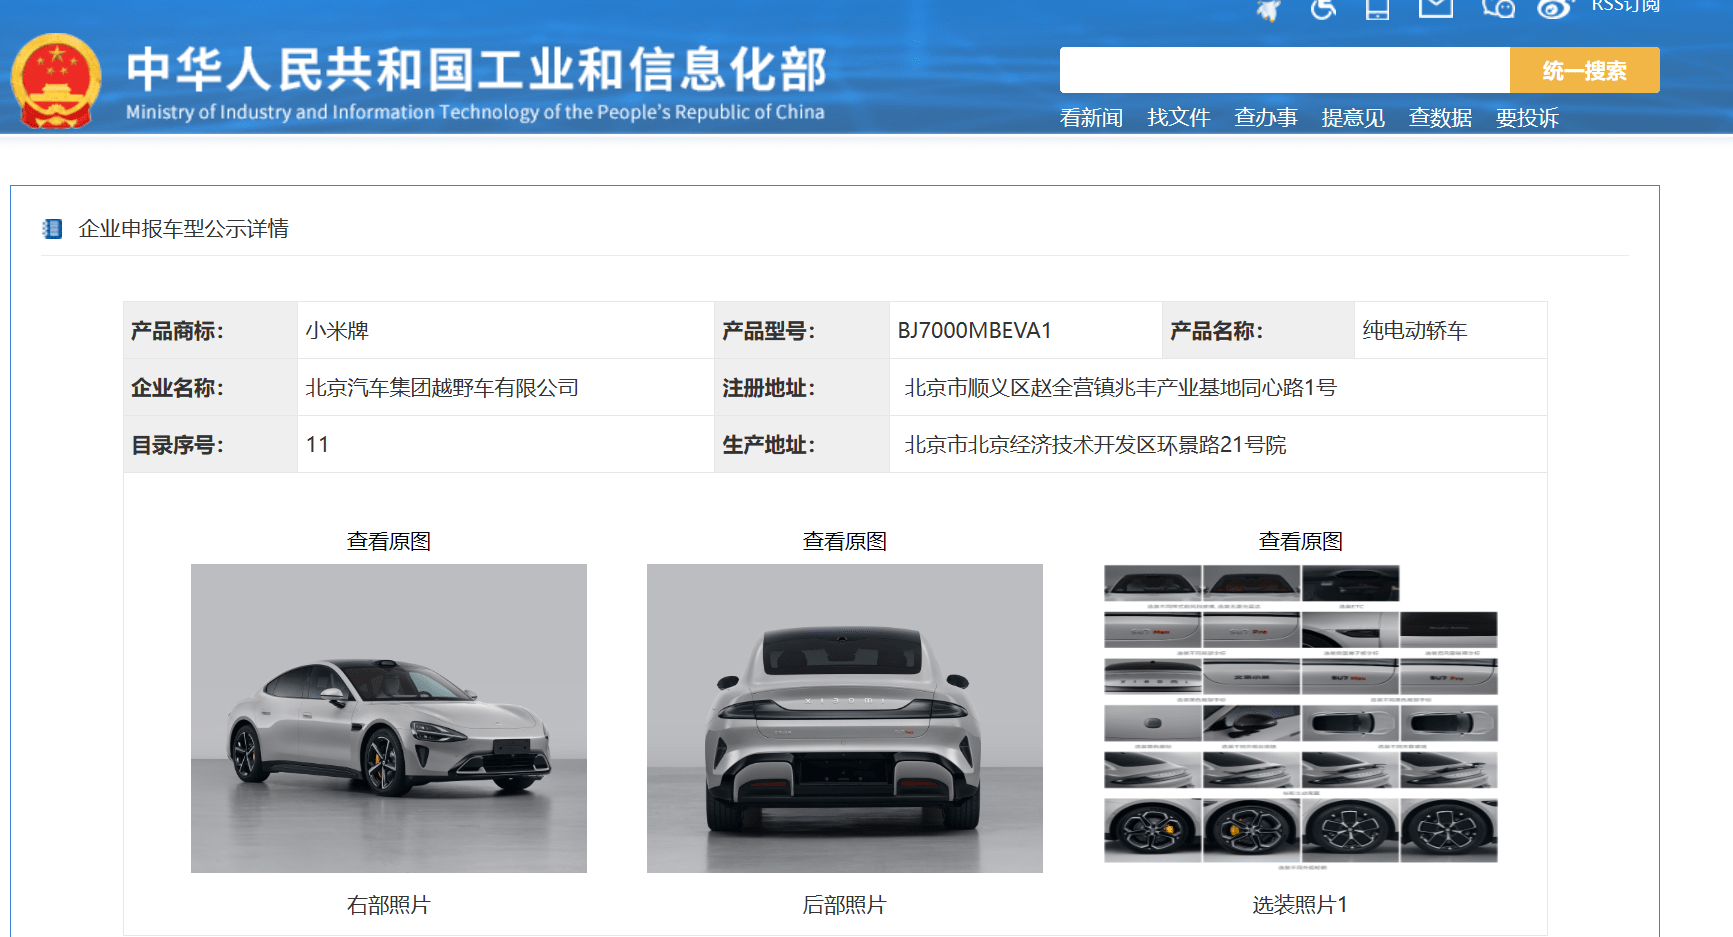 重磅！小米汽车照片曝光！外形、参数全公开，车尾是“北京小米”！新车或明年2月上市……